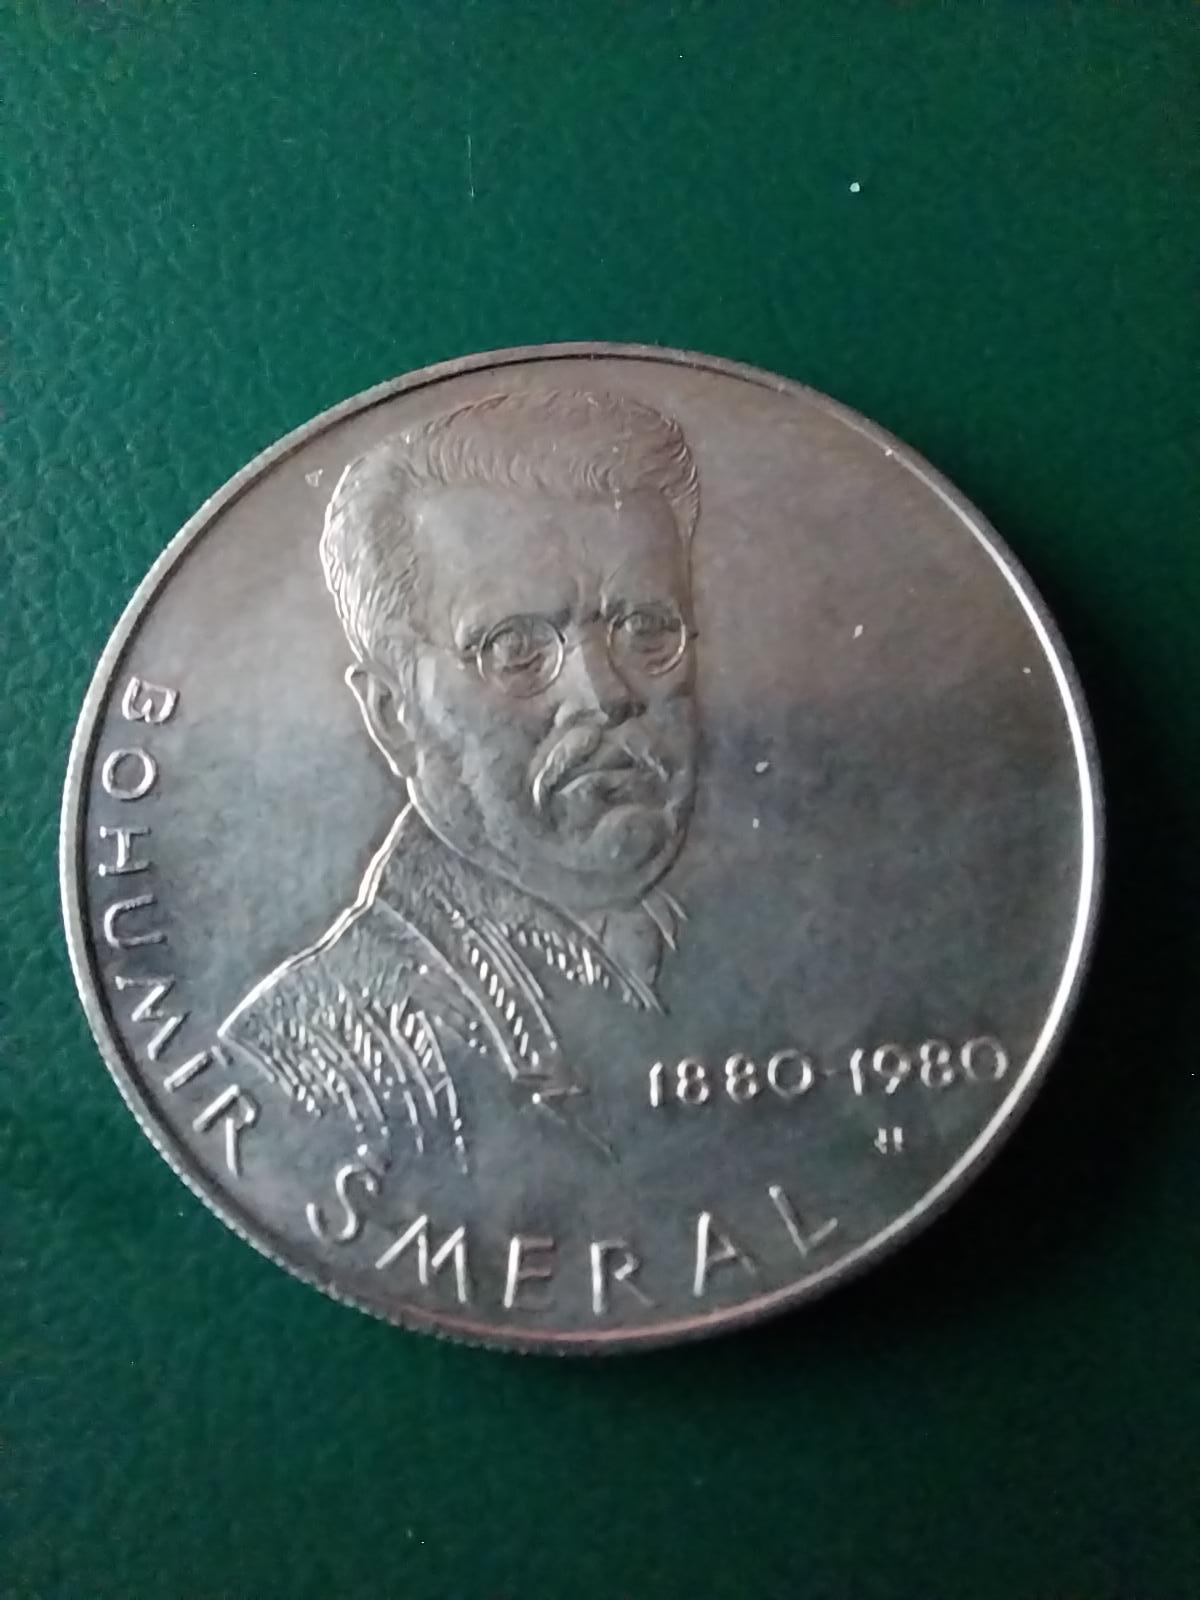 Strieborná pamätná minca 100 kčs 1980 Bohumír Šmeral - LUXUS stav - Numizmatika